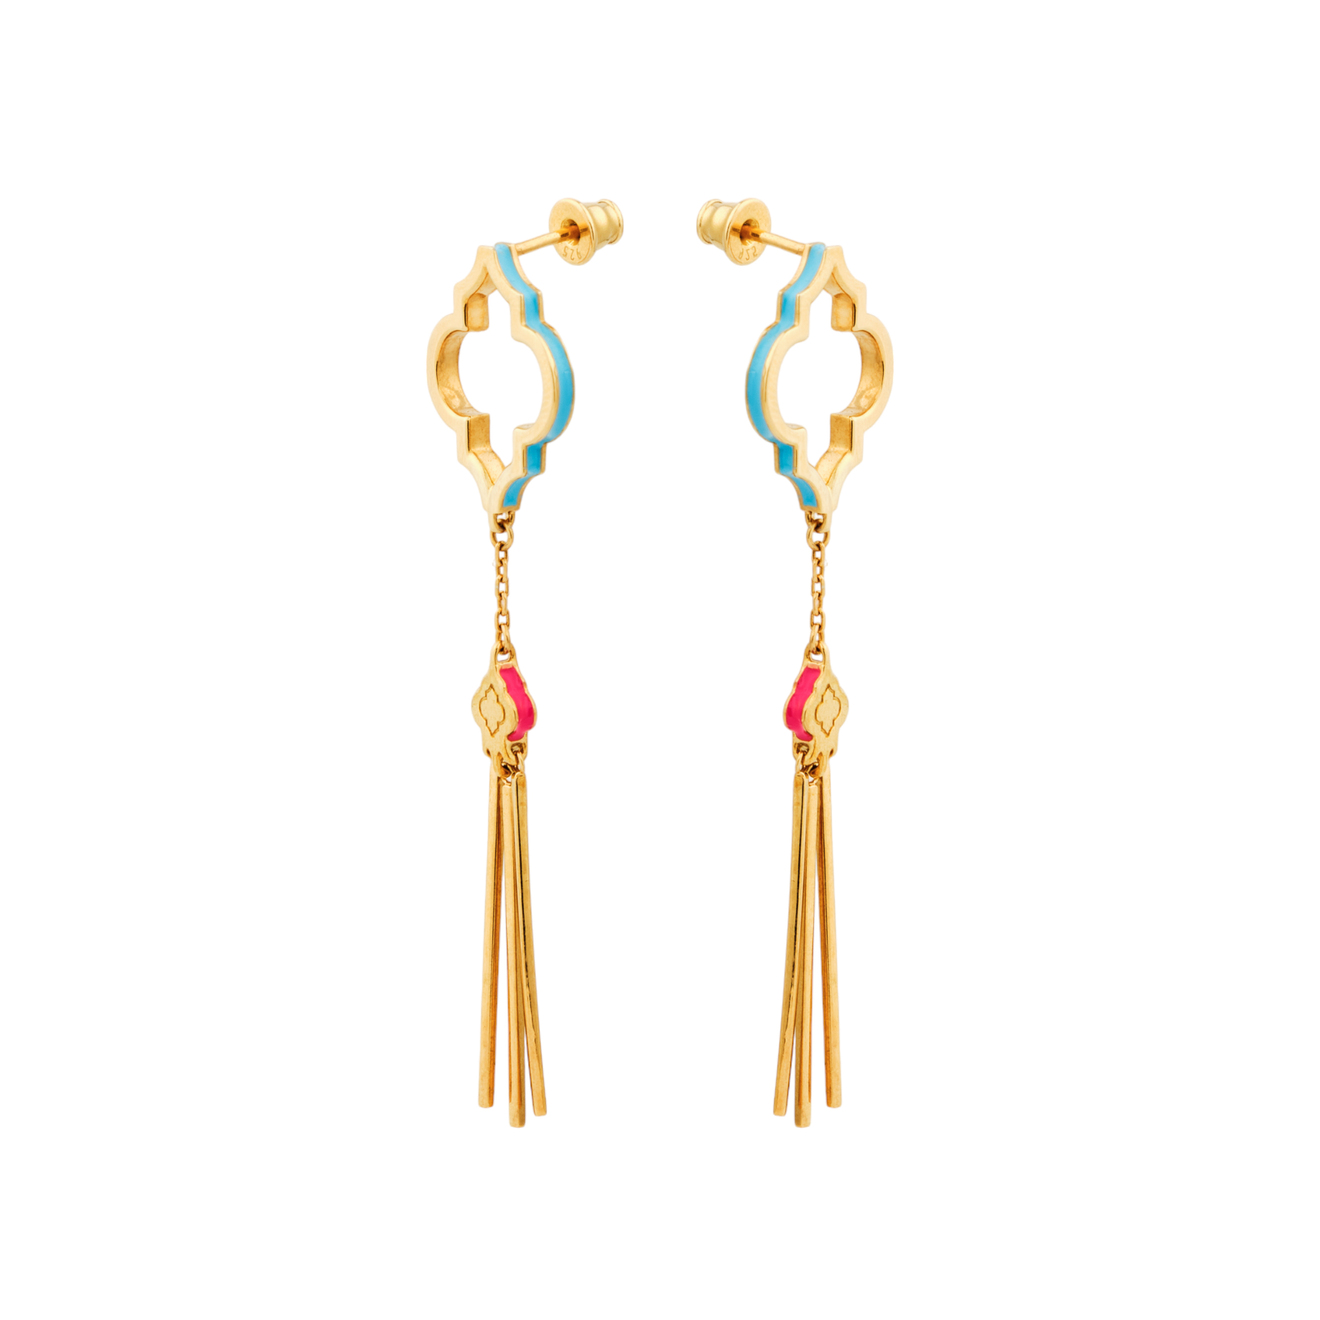 LUTA Jewelry Позолоченные серьги Марокко из серебра с бирюзовой и розовой эмалью luta jewelry серебряный чокер марокко с позолотой в розовой и синей эмали